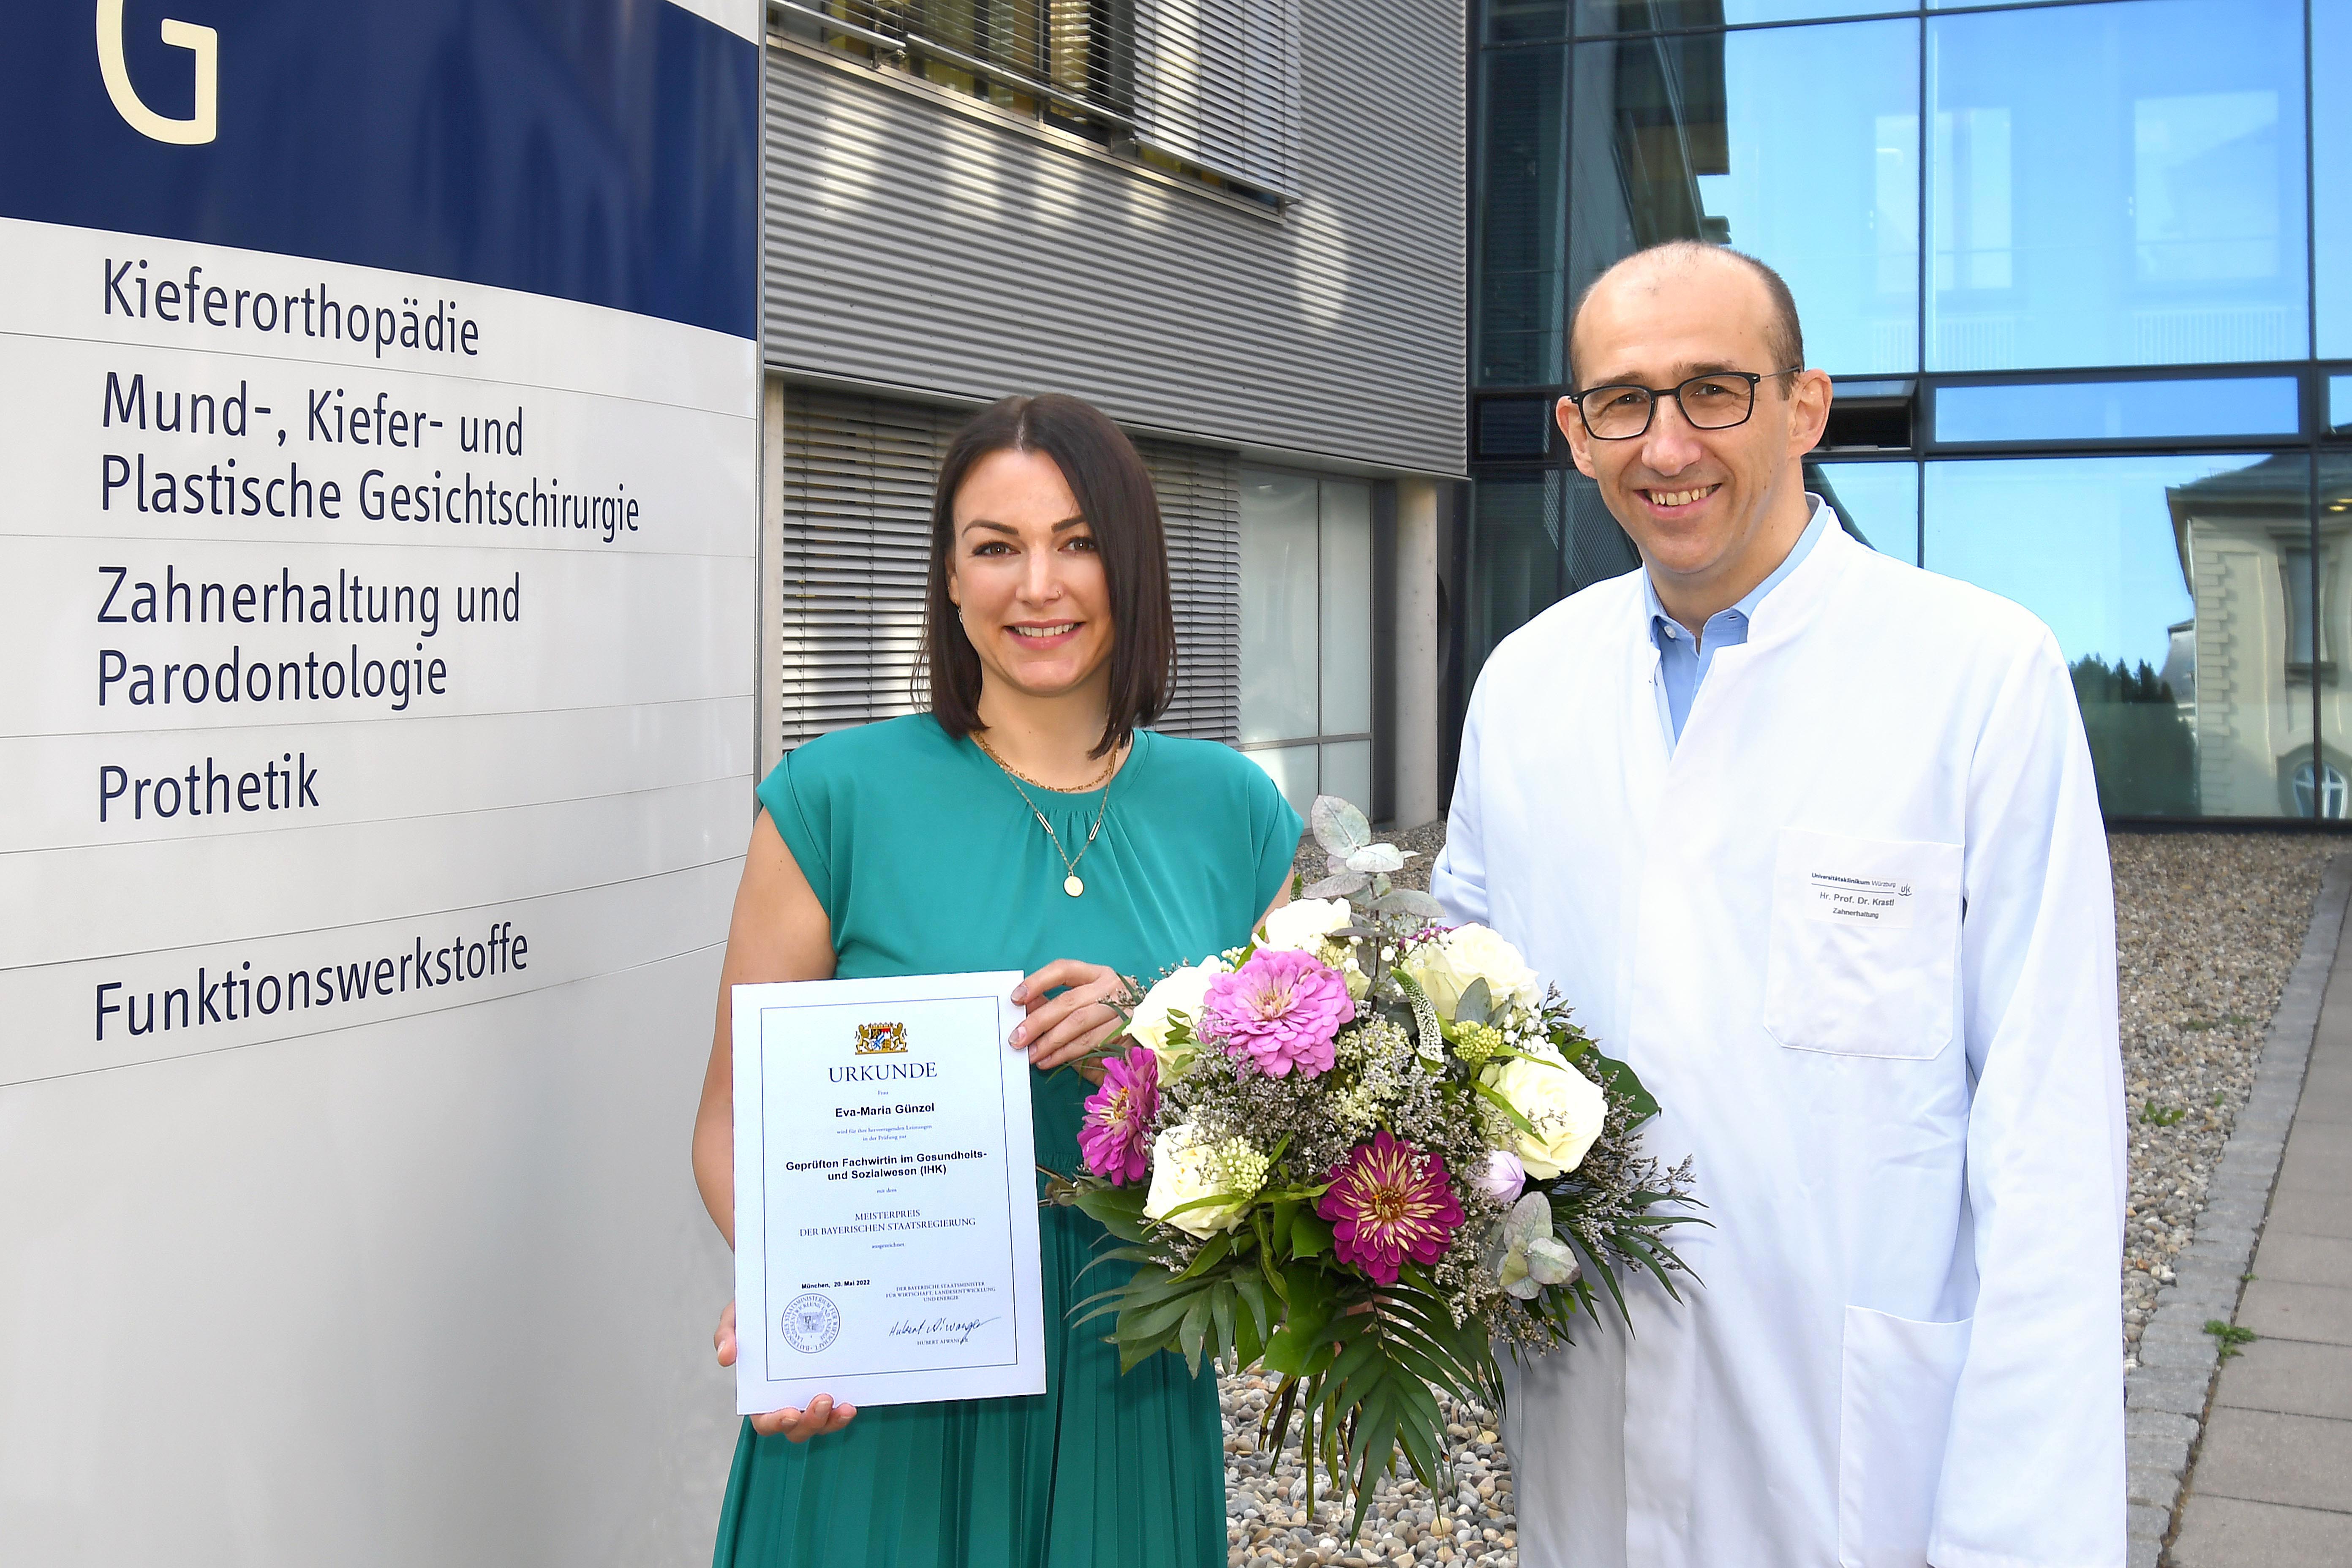 Prof. Dr. Gabriel Krastl vom Zentrum für ZMK des Universitätsklinikums Würzburg gratulierte seiner Chefsekretärin Eva Günzel herzlich zum Meisterpreis der Bayerischen Staatsregierung.